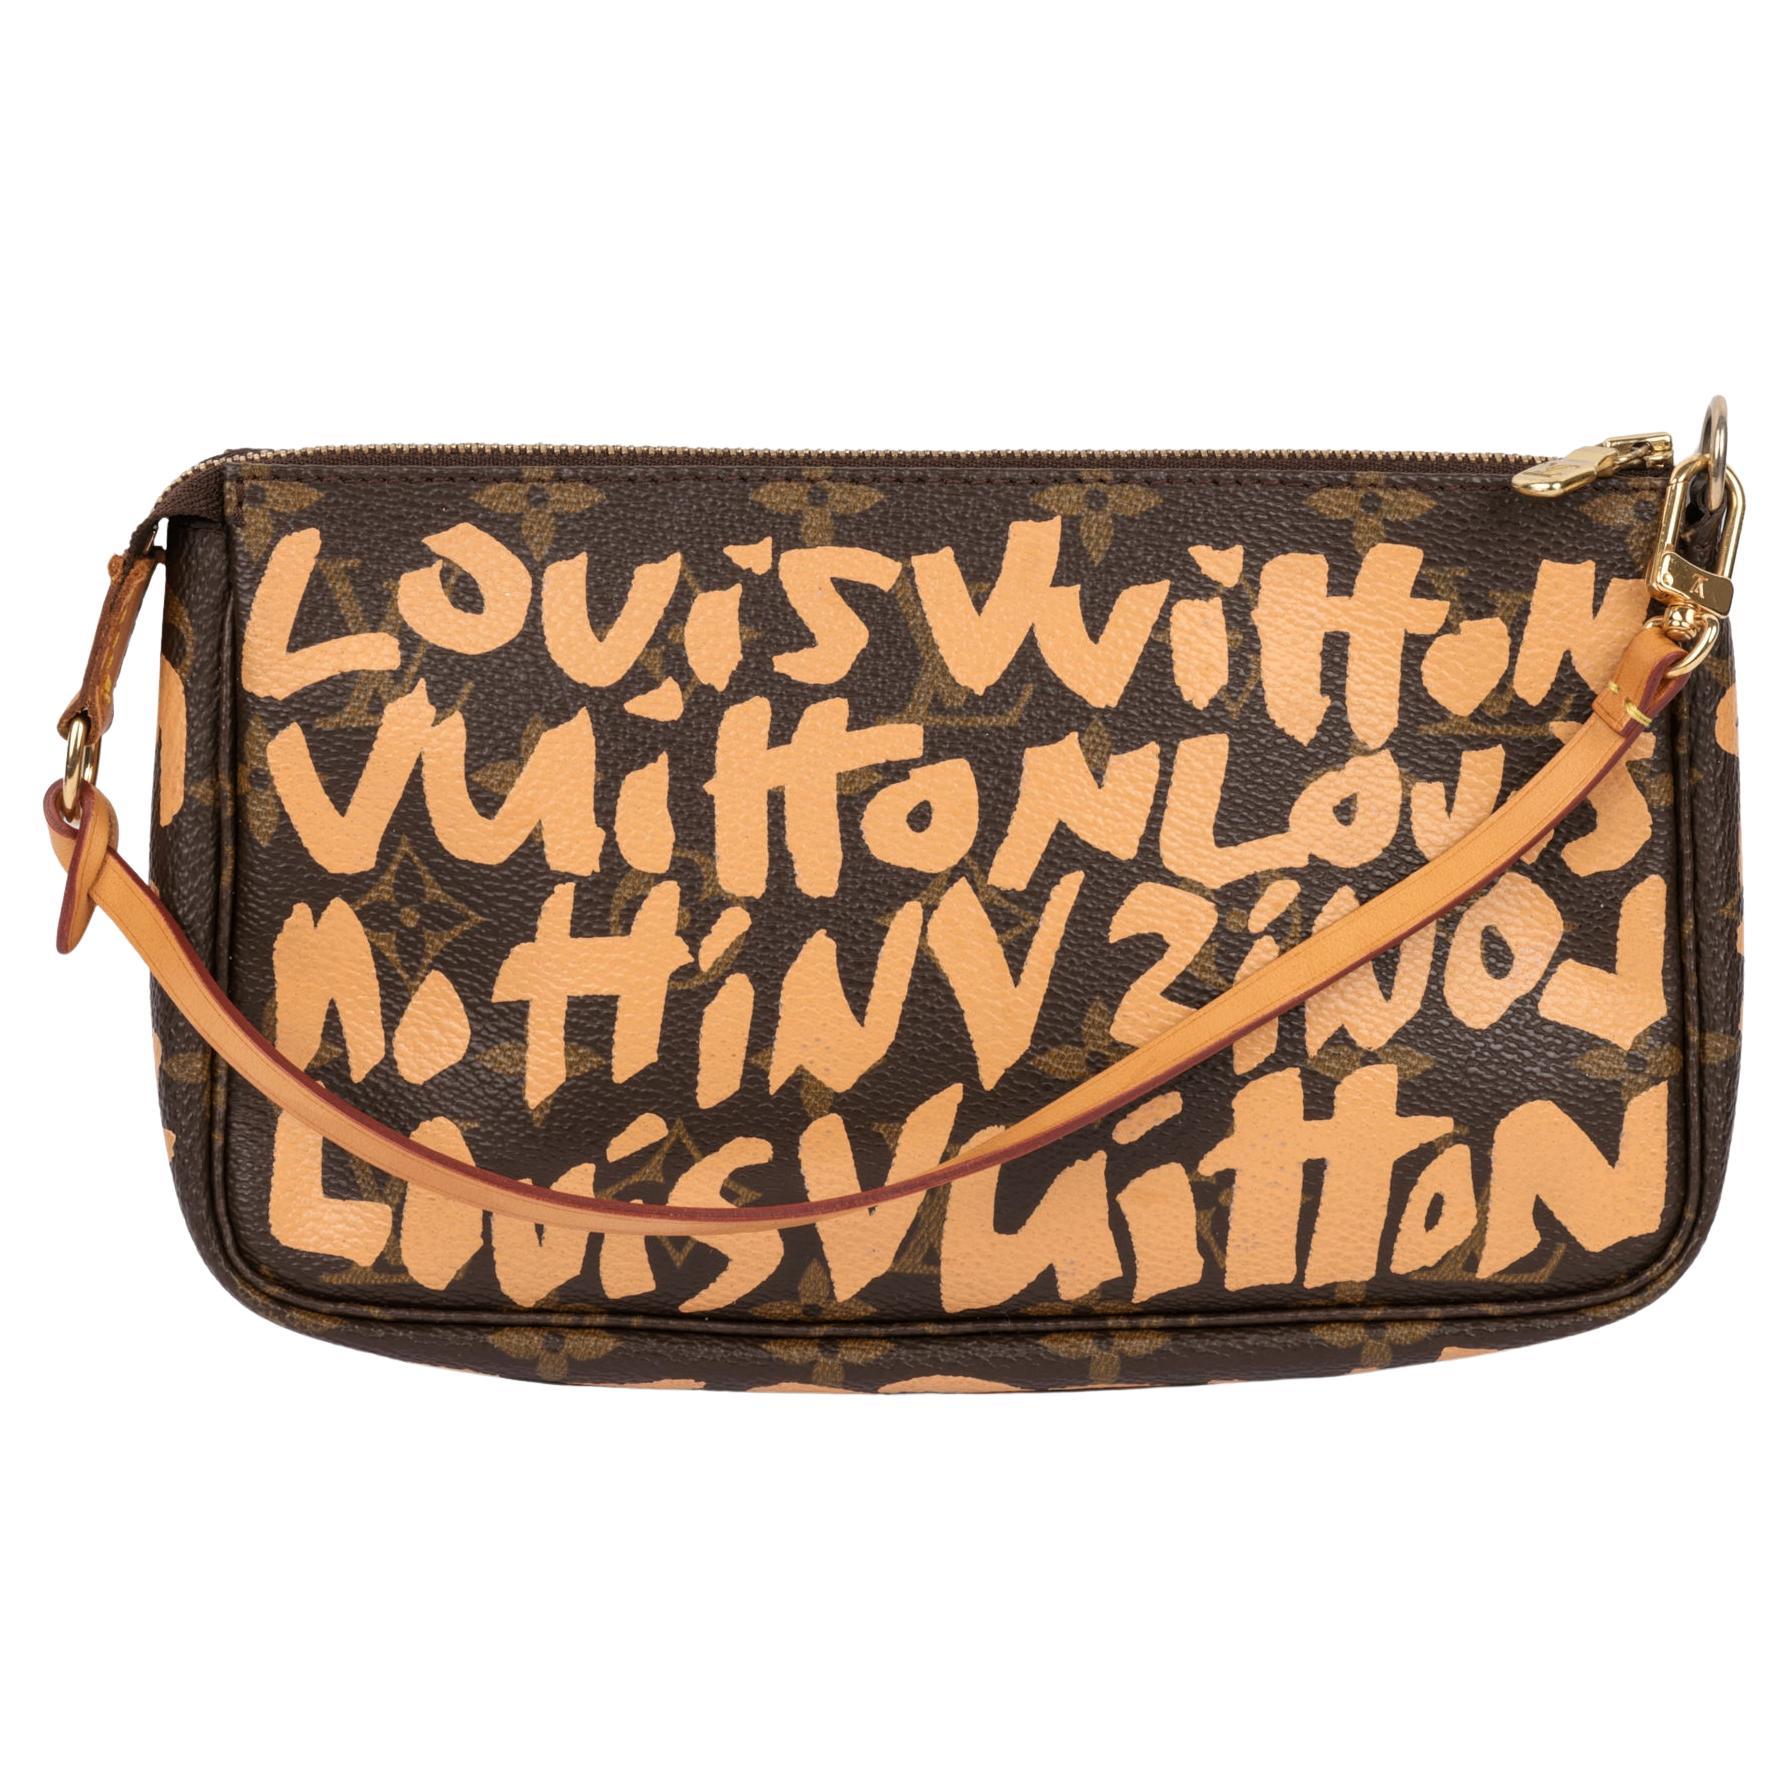 Louis Vuitton Ltd. Ed. Stephen Sprouse Graffiti Sarah Wallet Auction